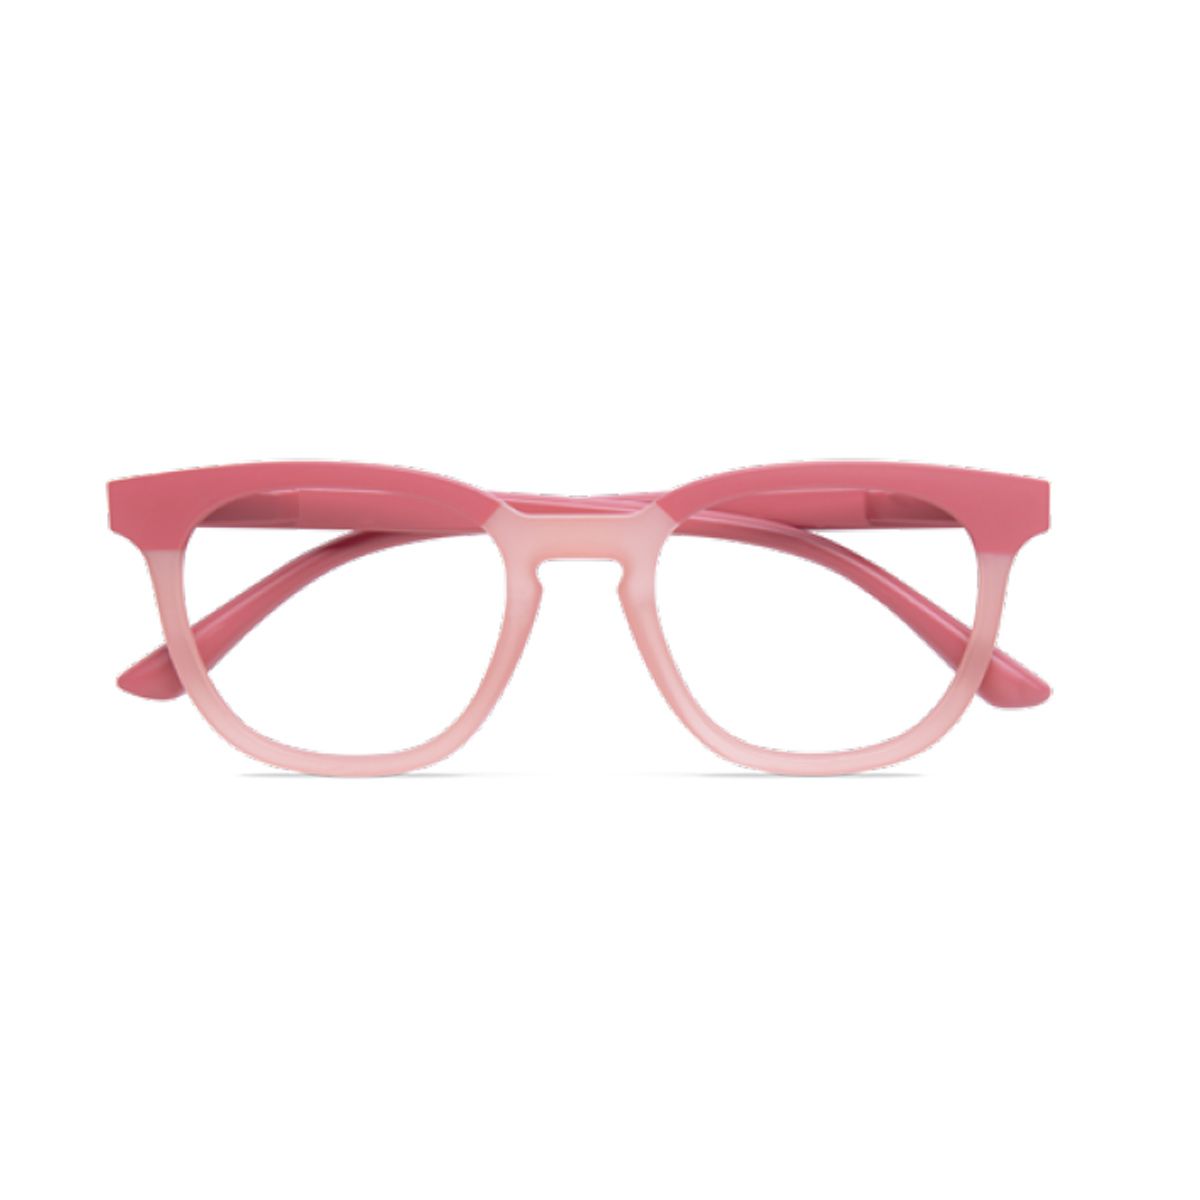 twins optical occhiali lettura gold fiordaliso rosa antico +1,50 1 pezzo